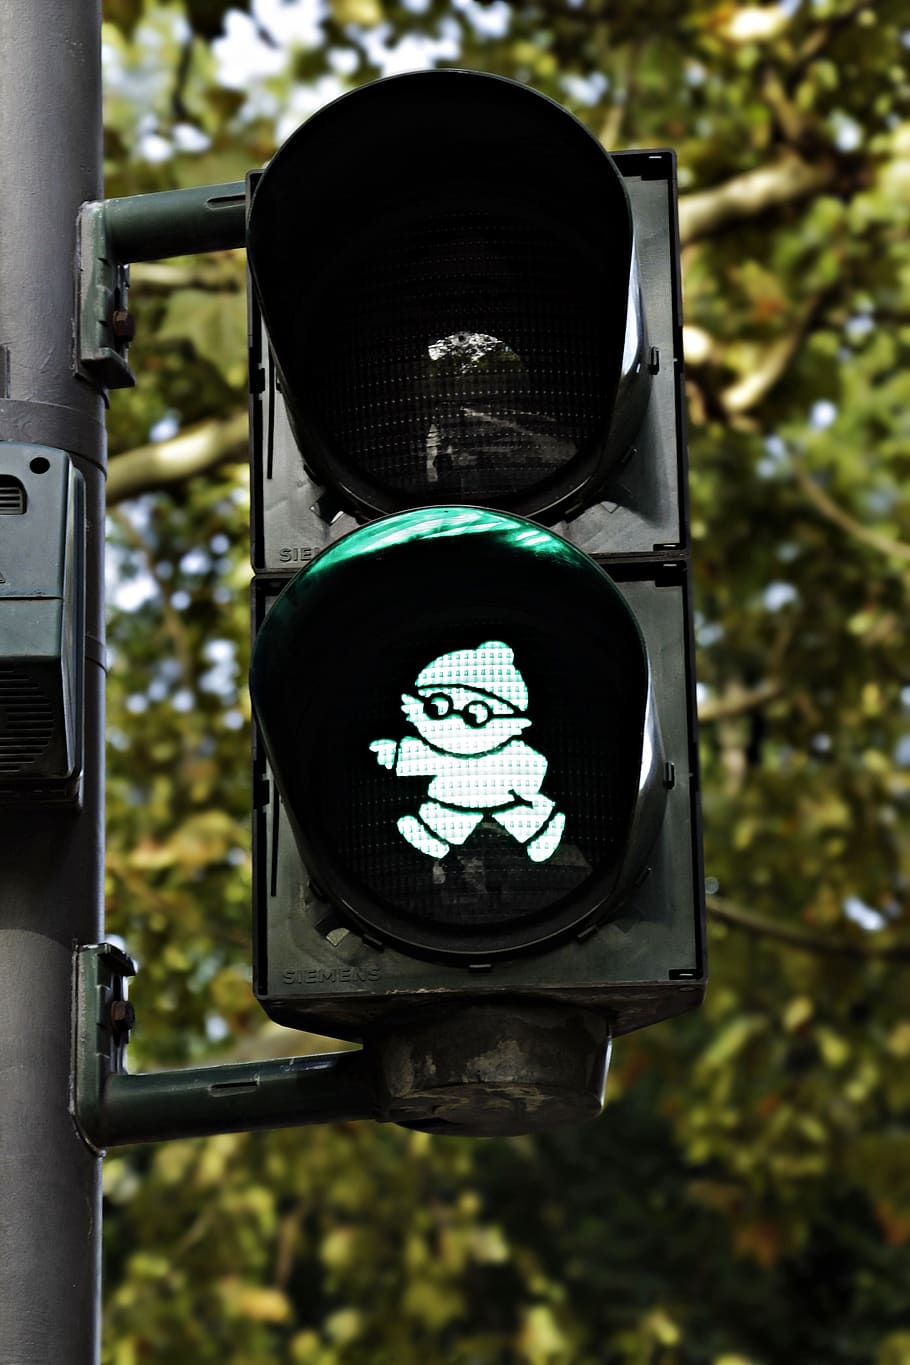 traffic lights, mainzelmännchen, green, traffic signal, road, light signal, road sign, go, pedestrian, little green man